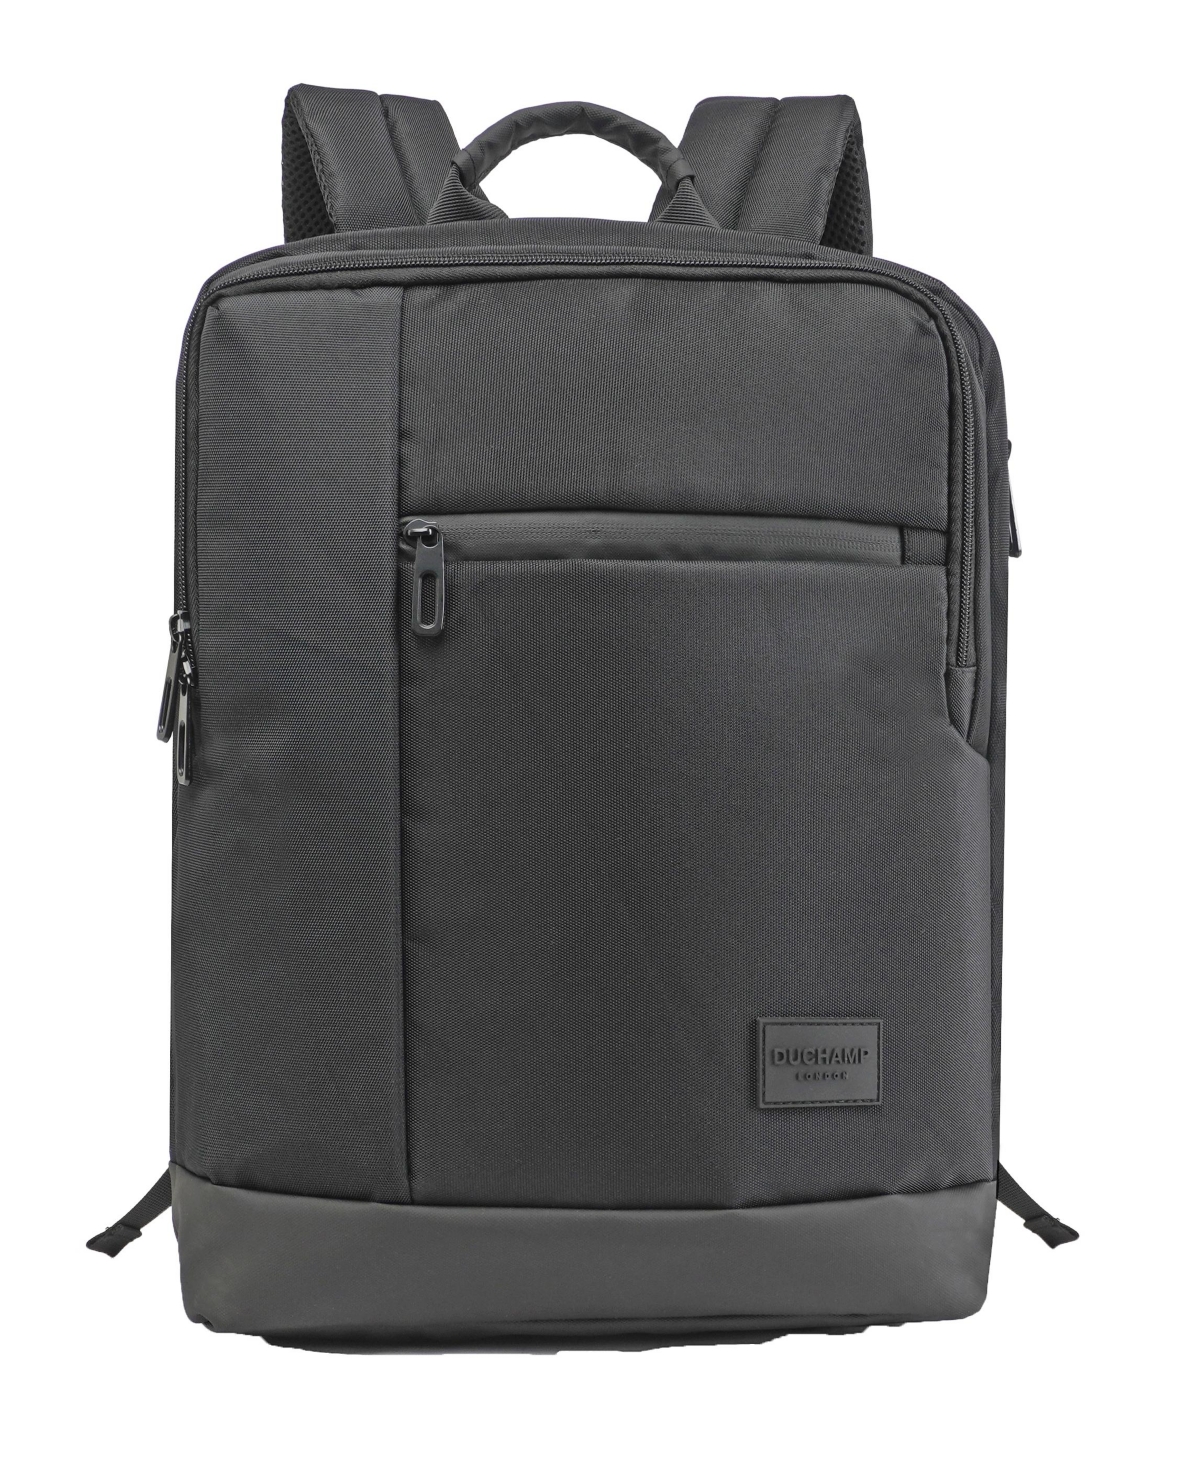 Men's Lightweight Laptop Backpack - Black